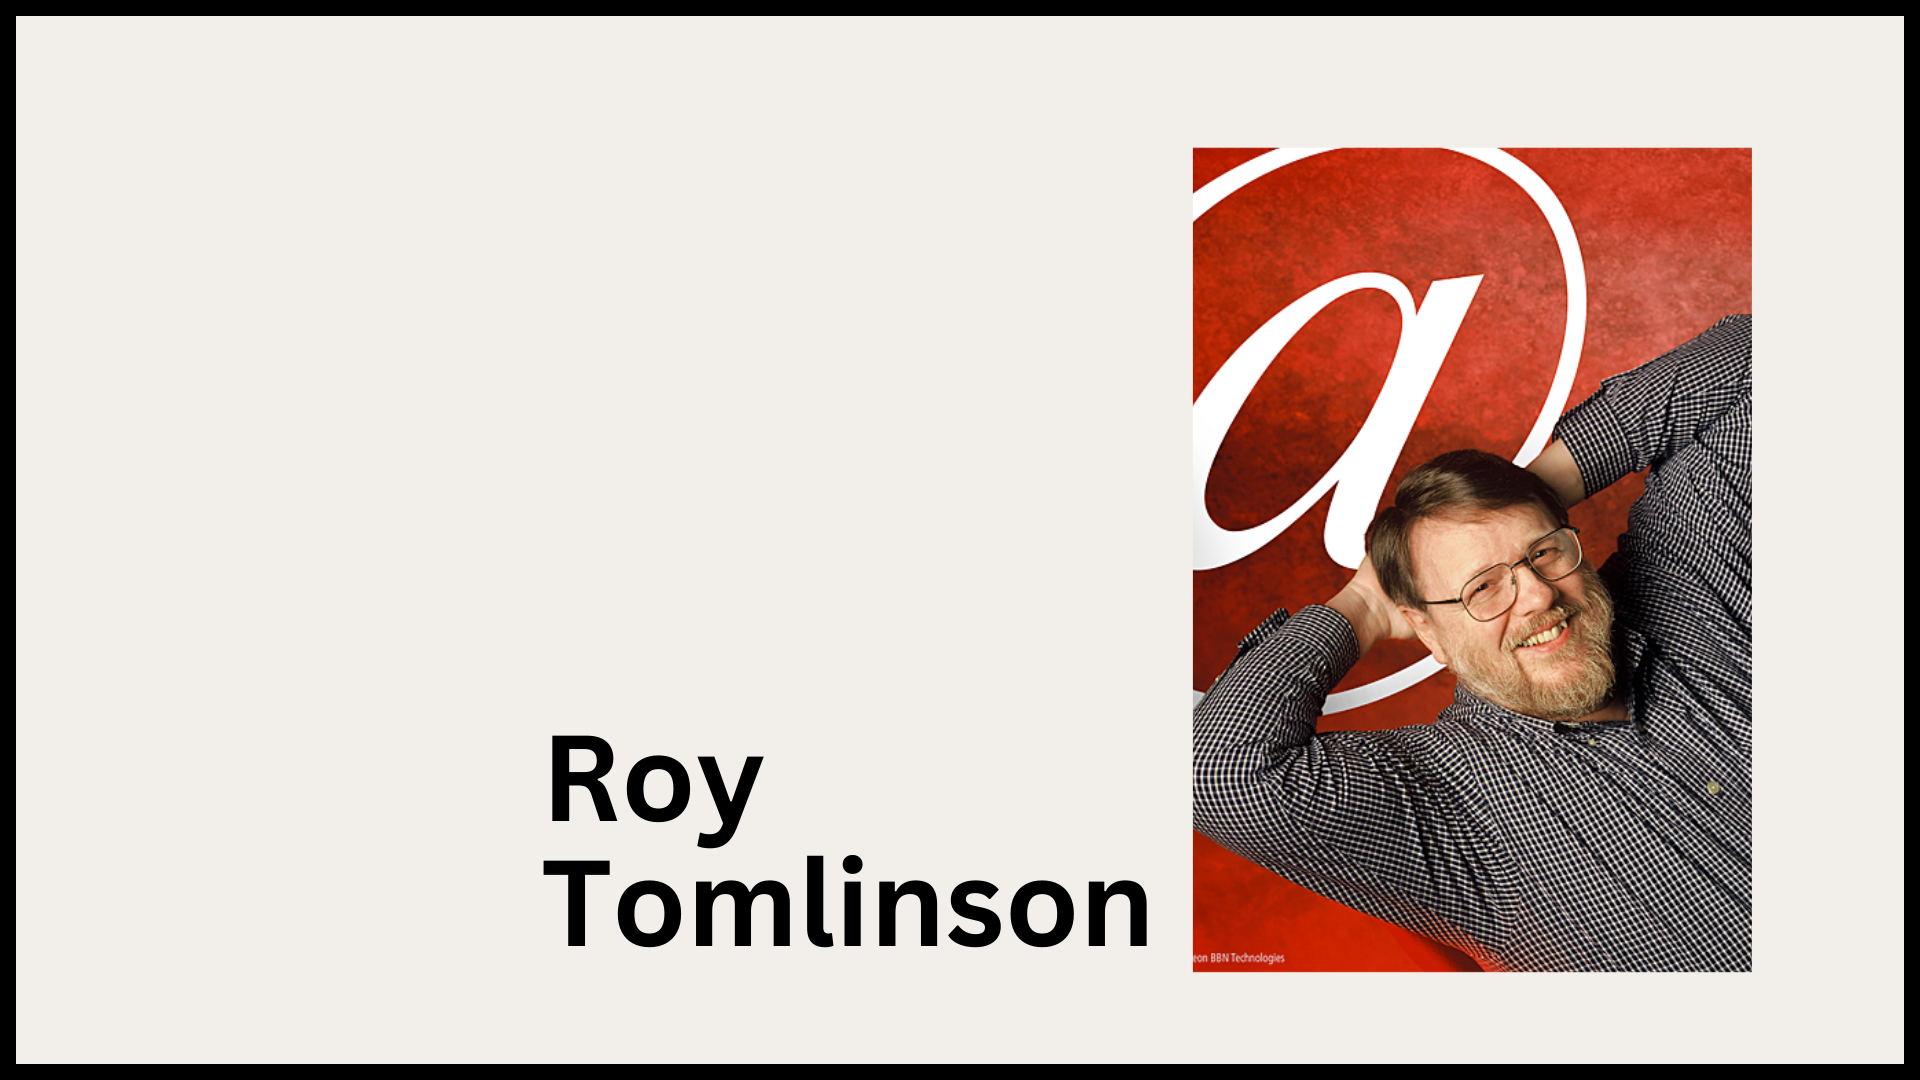 Roy Tomlinson